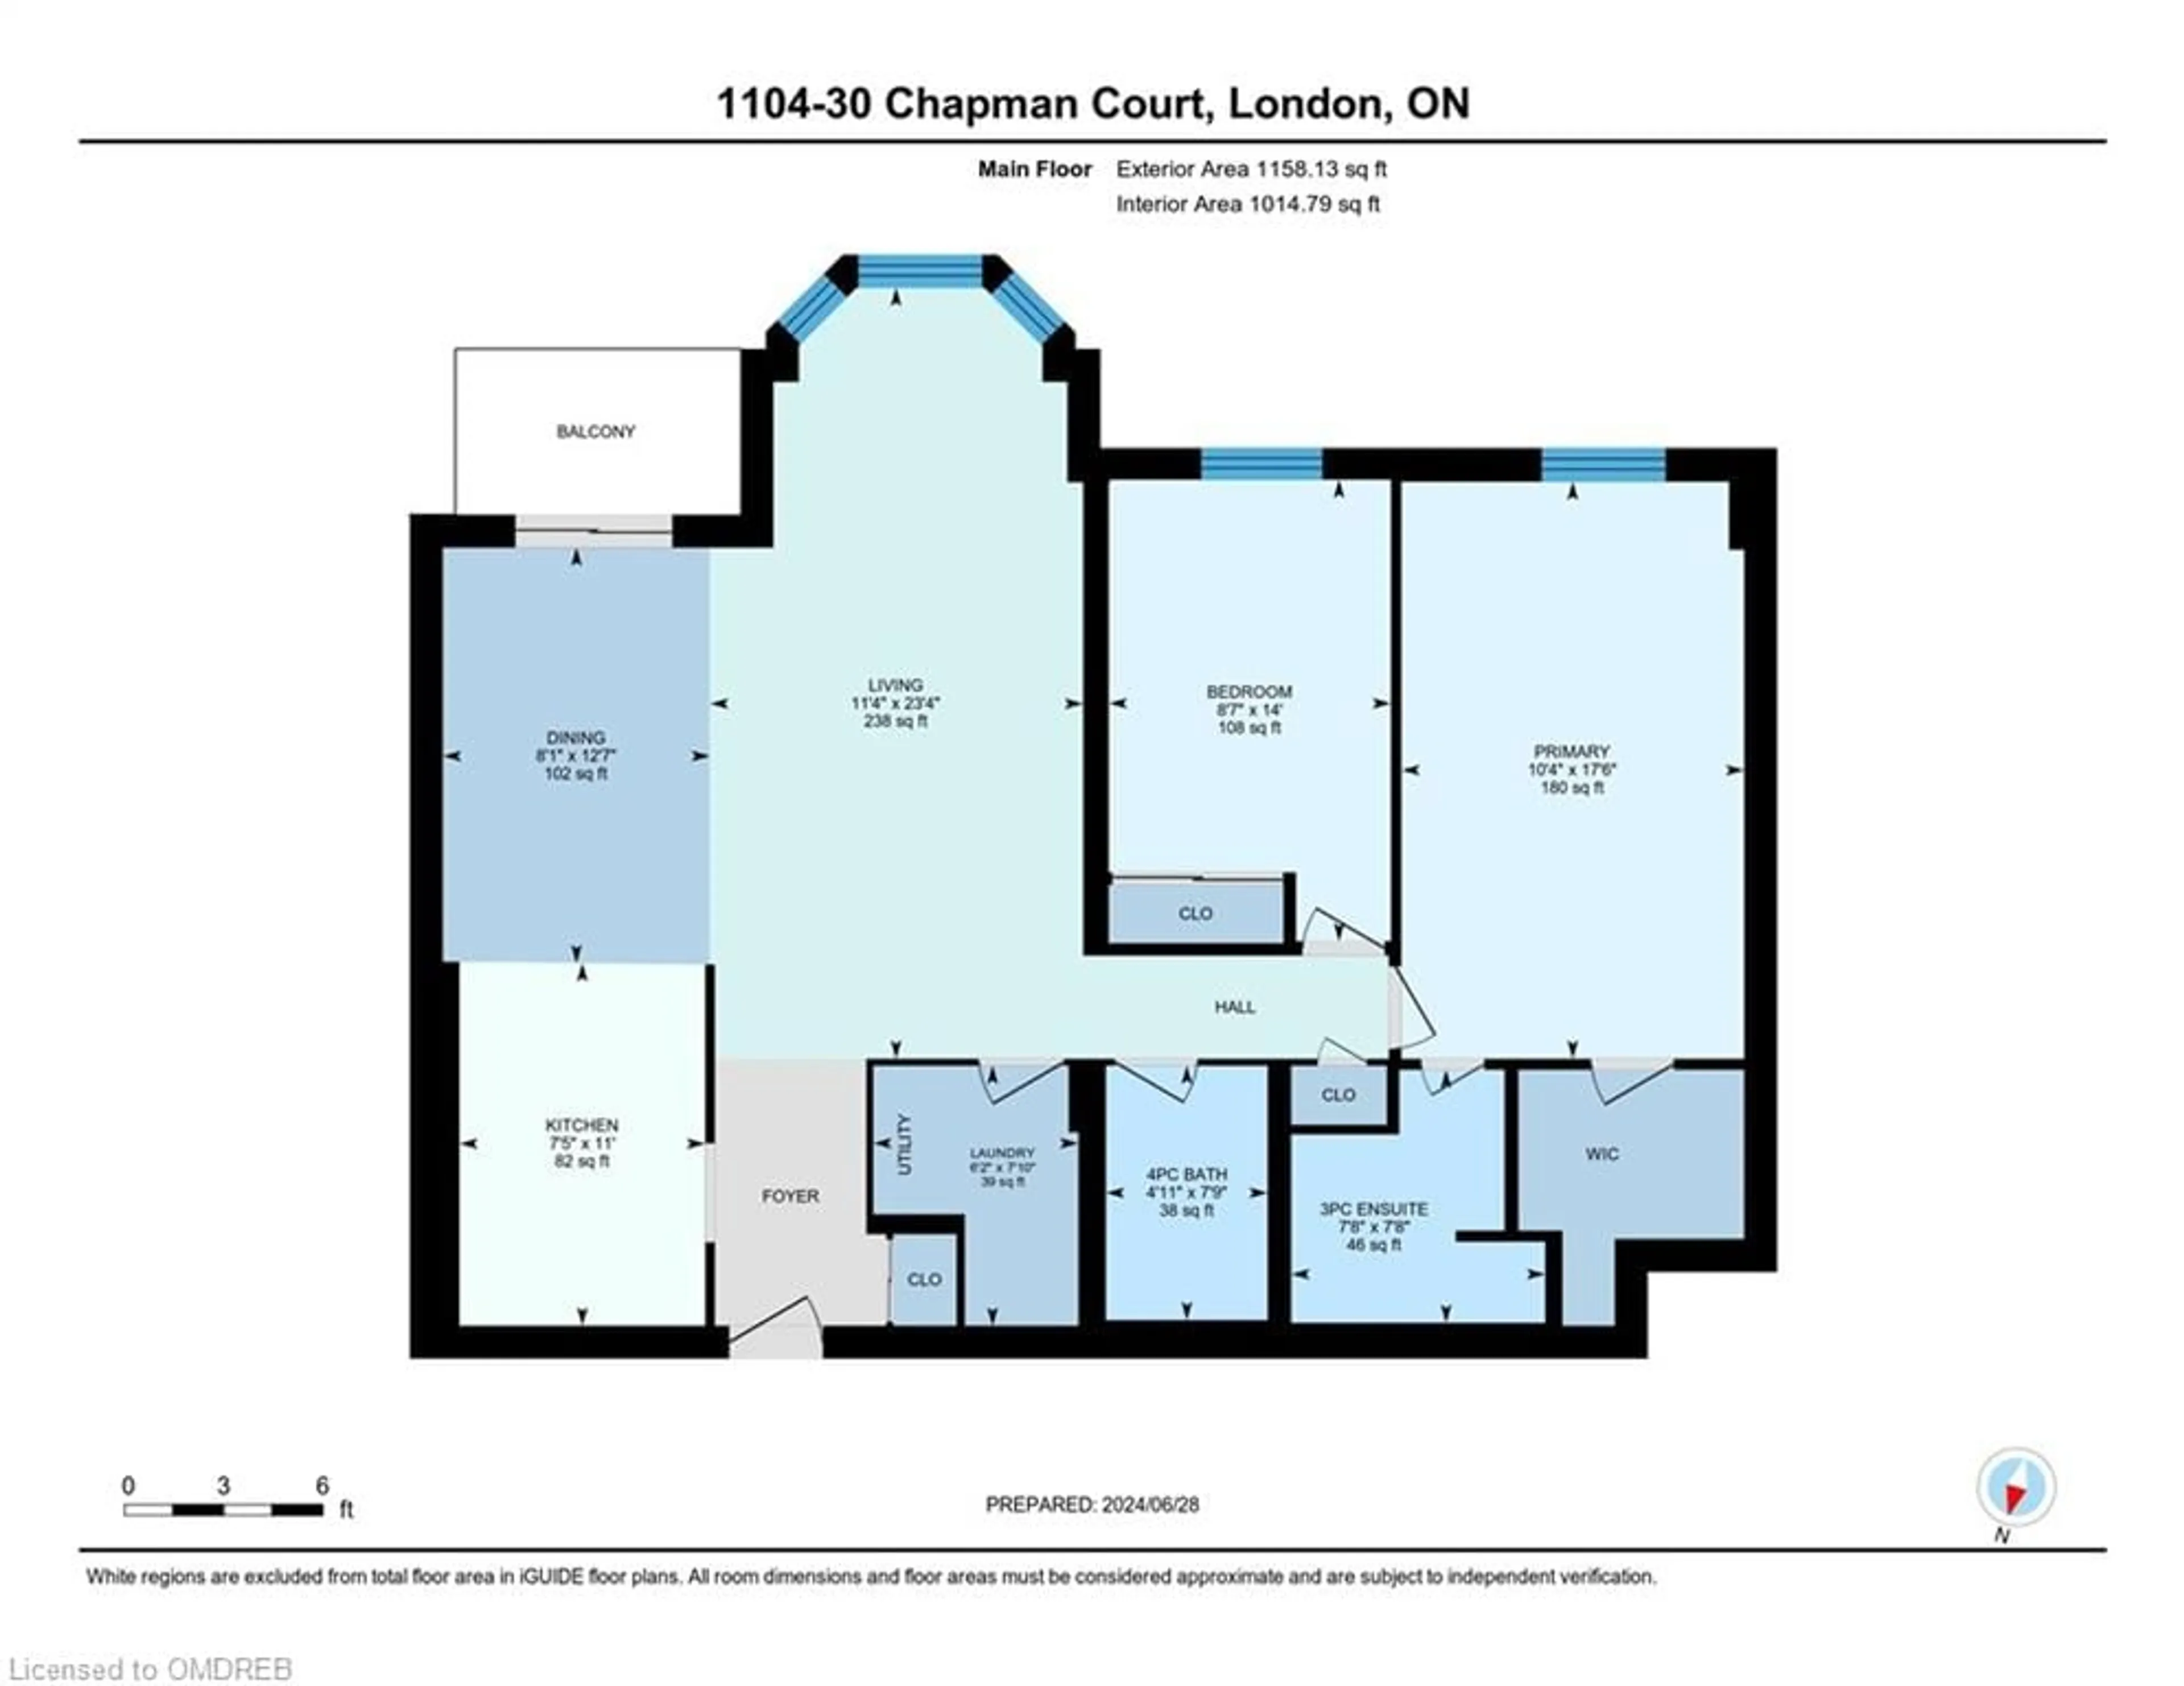 Floor plan for 30 Chapman Crt #1104, London Ontario N6G 4Y4